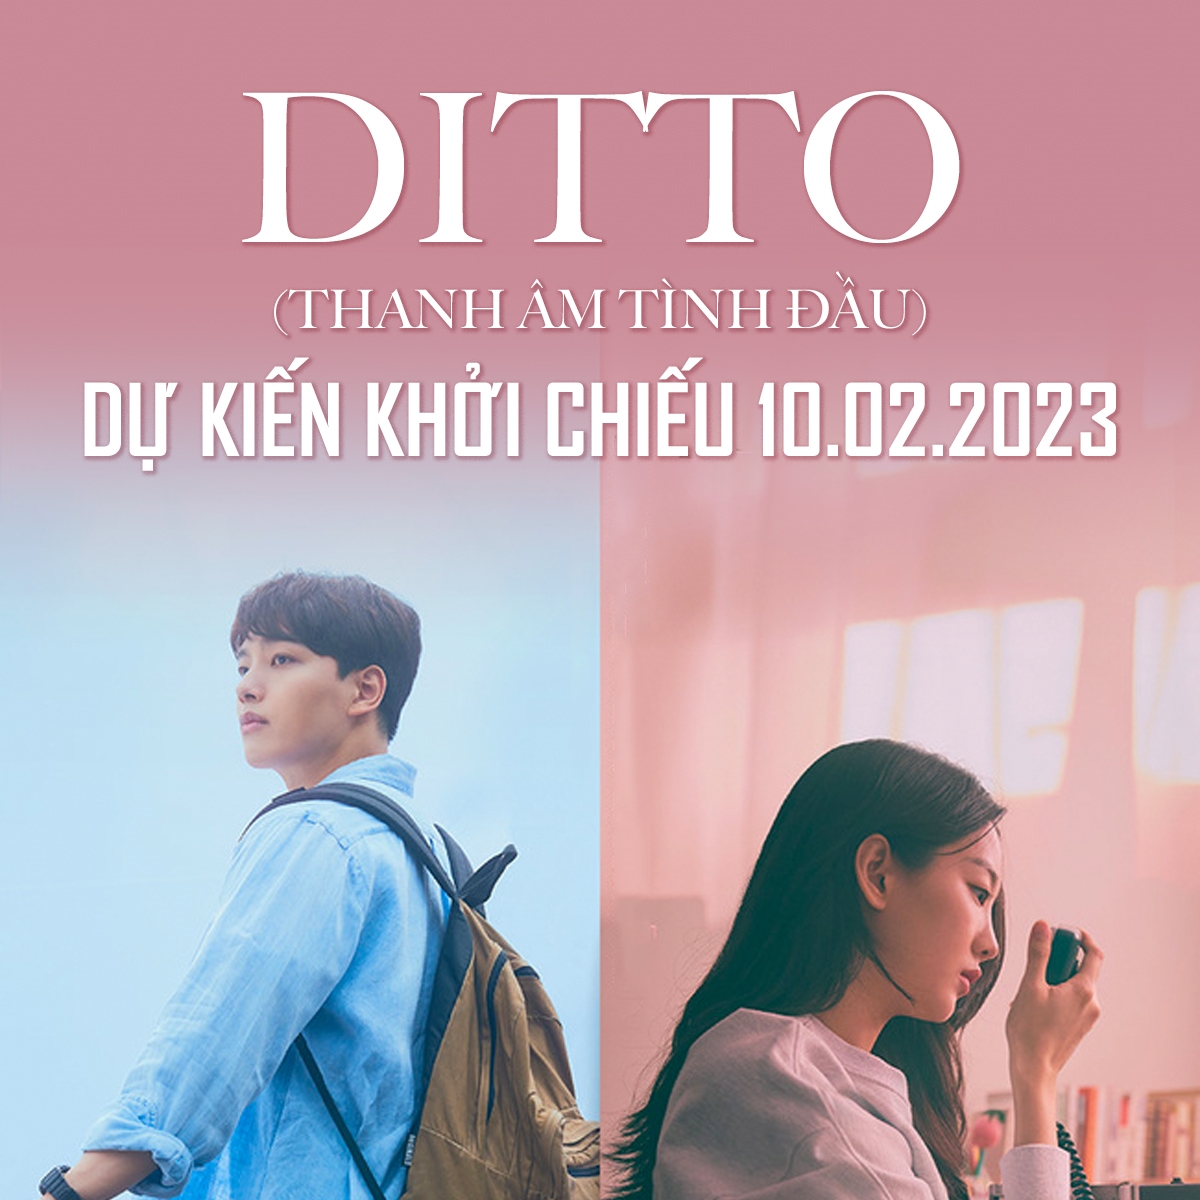 Poster phim “Ditto” (“Thanh âm tình đầu”)